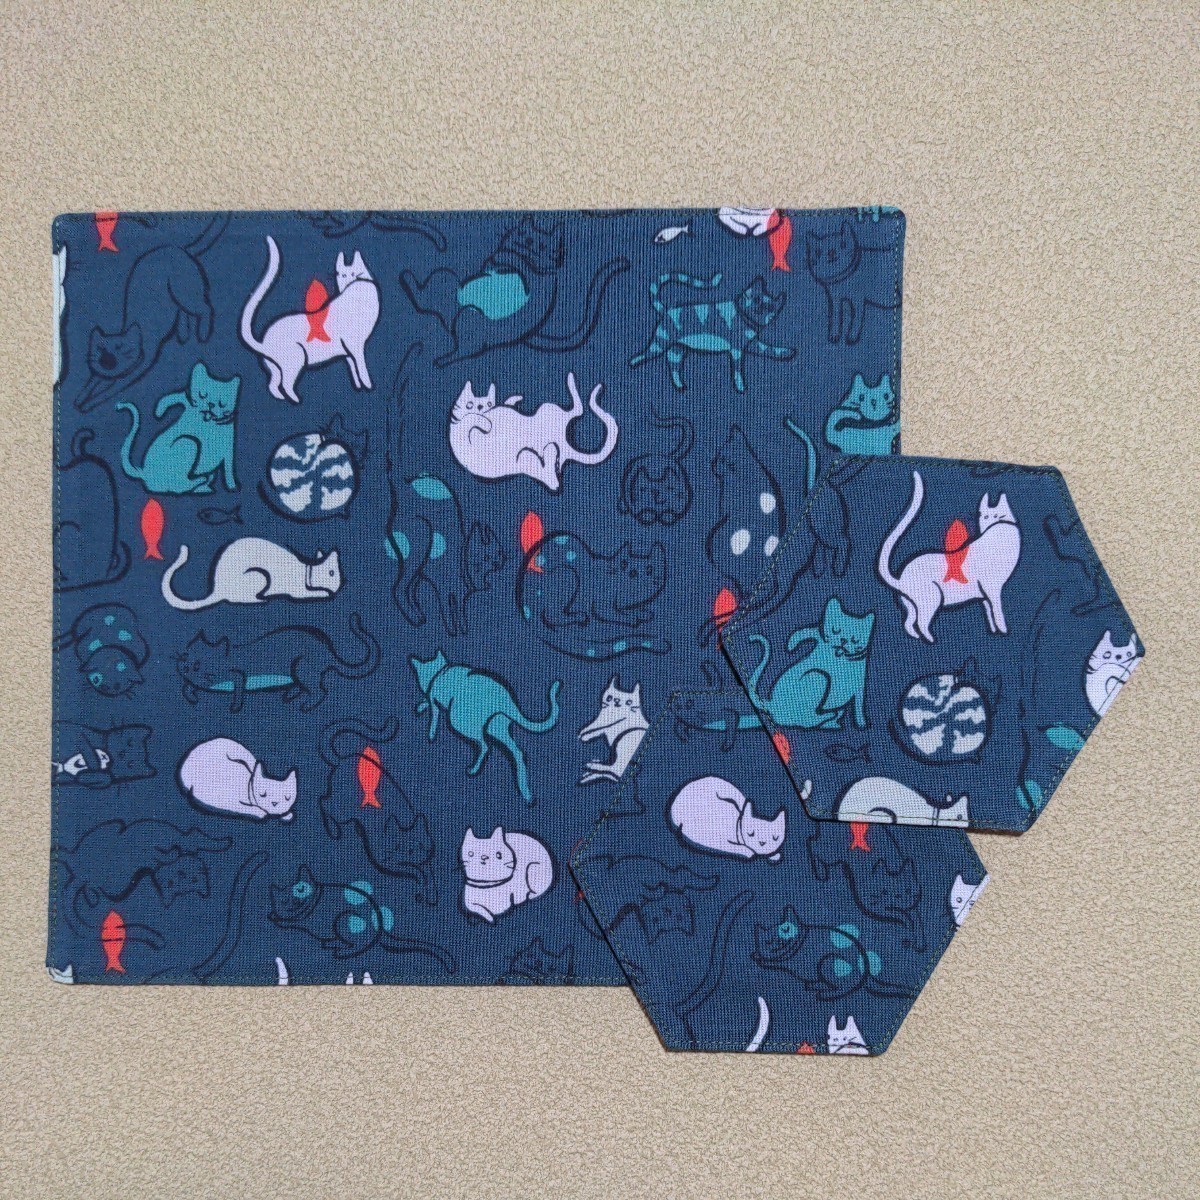 Cat pattern♪Tea time mat & coaster 2 piece set☆Handmade☆Multi mat*Snack*Hemp leaves*Gift*, handmade works, kitchen supplies, Place mat